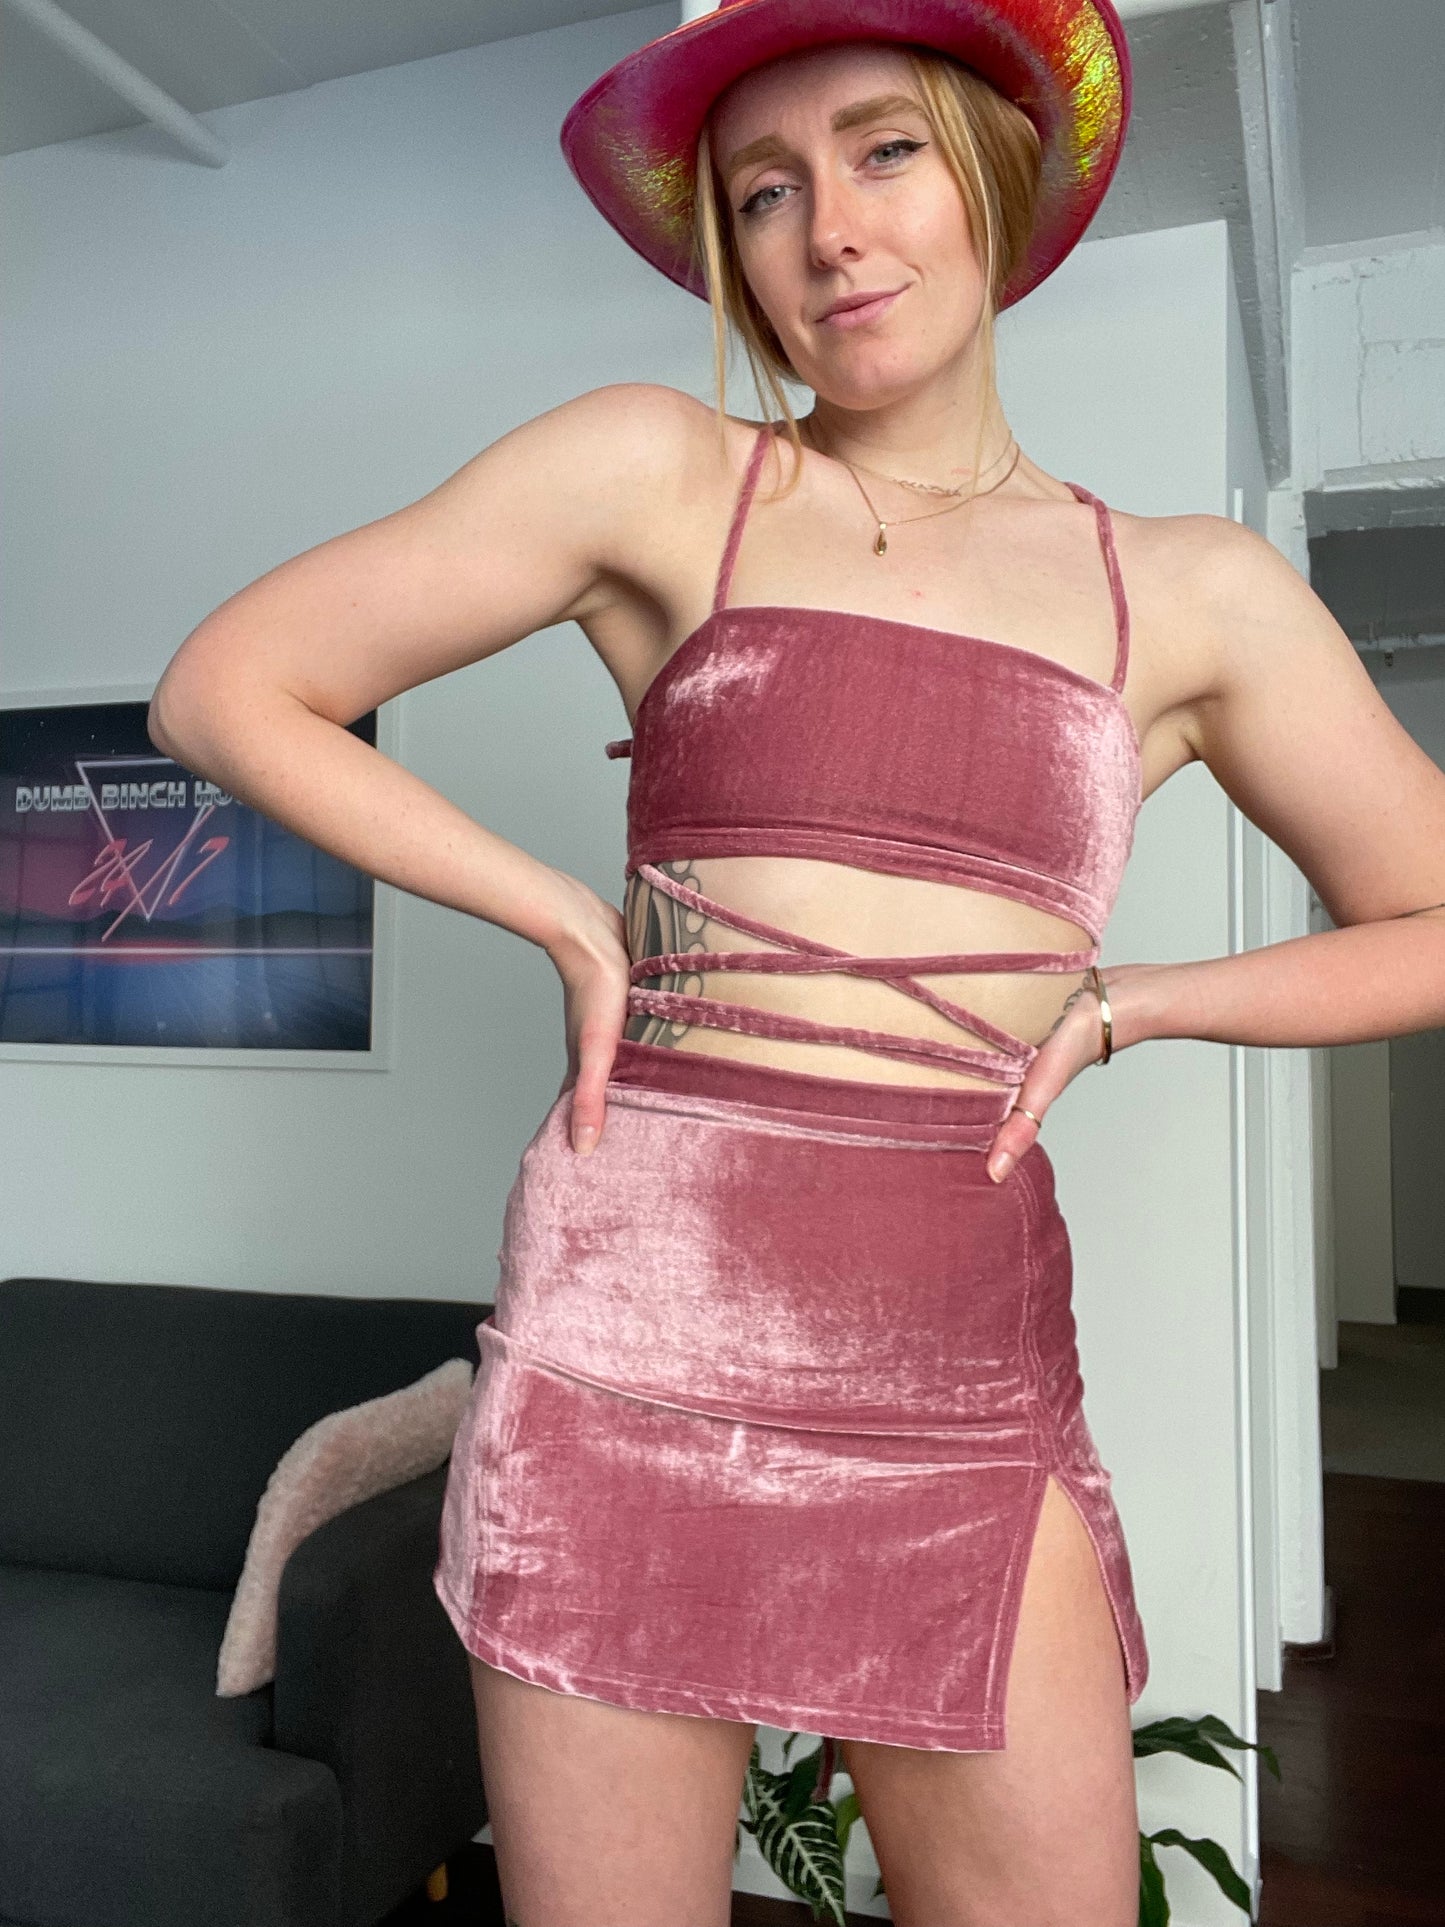 Single Slit Skirt / S / pink velvet